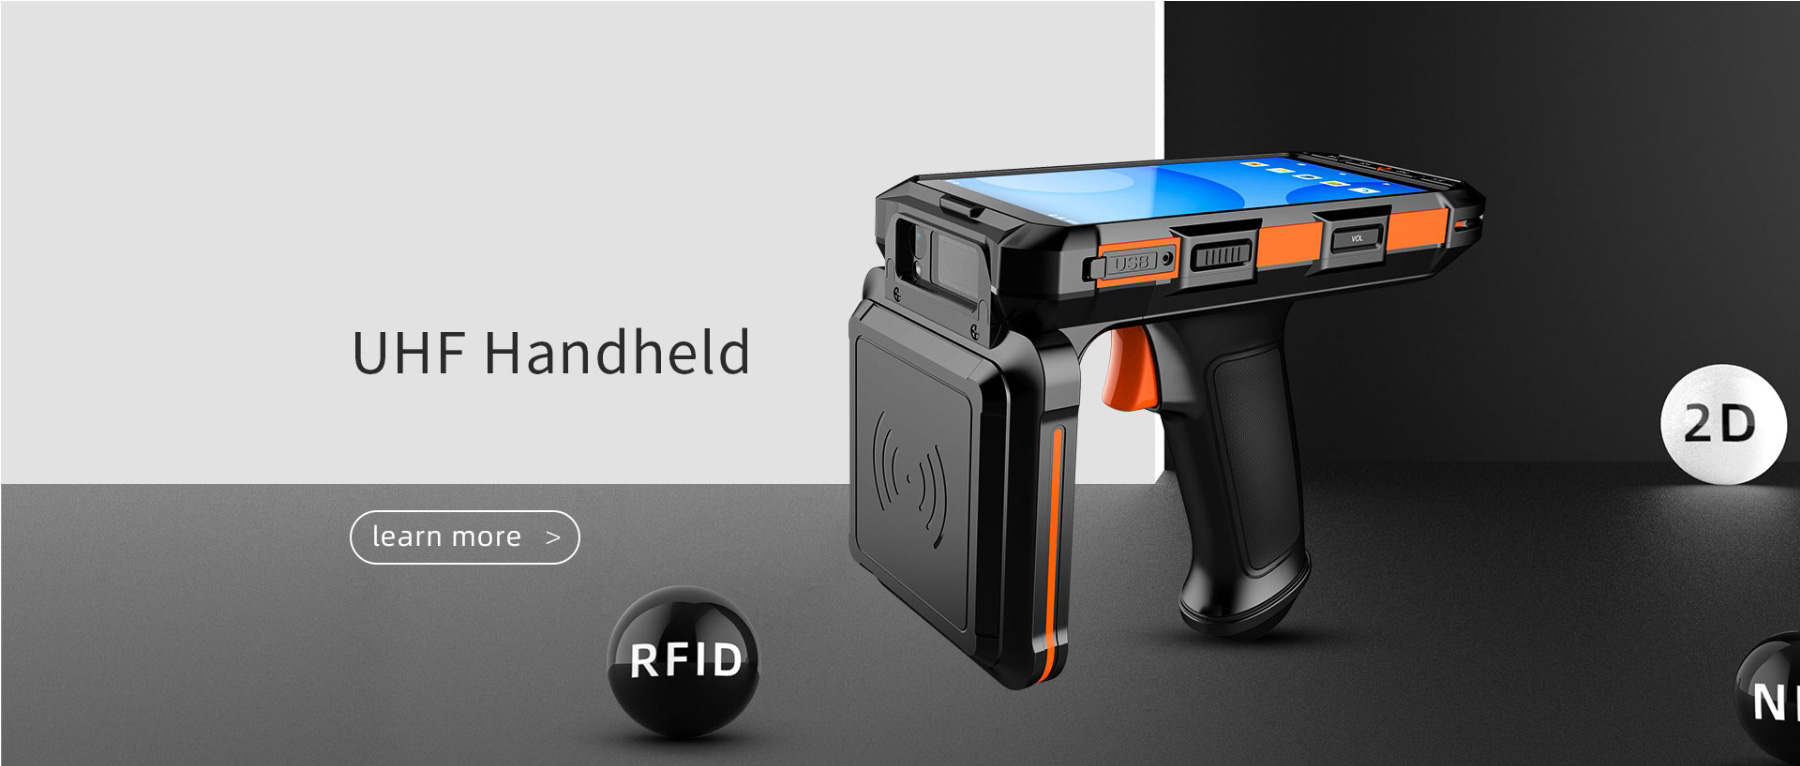 Handheld (včetně tabletu, kapesních zařízení, nositelných zařízení atd.) označuje mobilní, přenosná UHF RFID čtecí zařízení, z nichž ruční je nejběžnější formou. Tento typ produktu je charakteristický